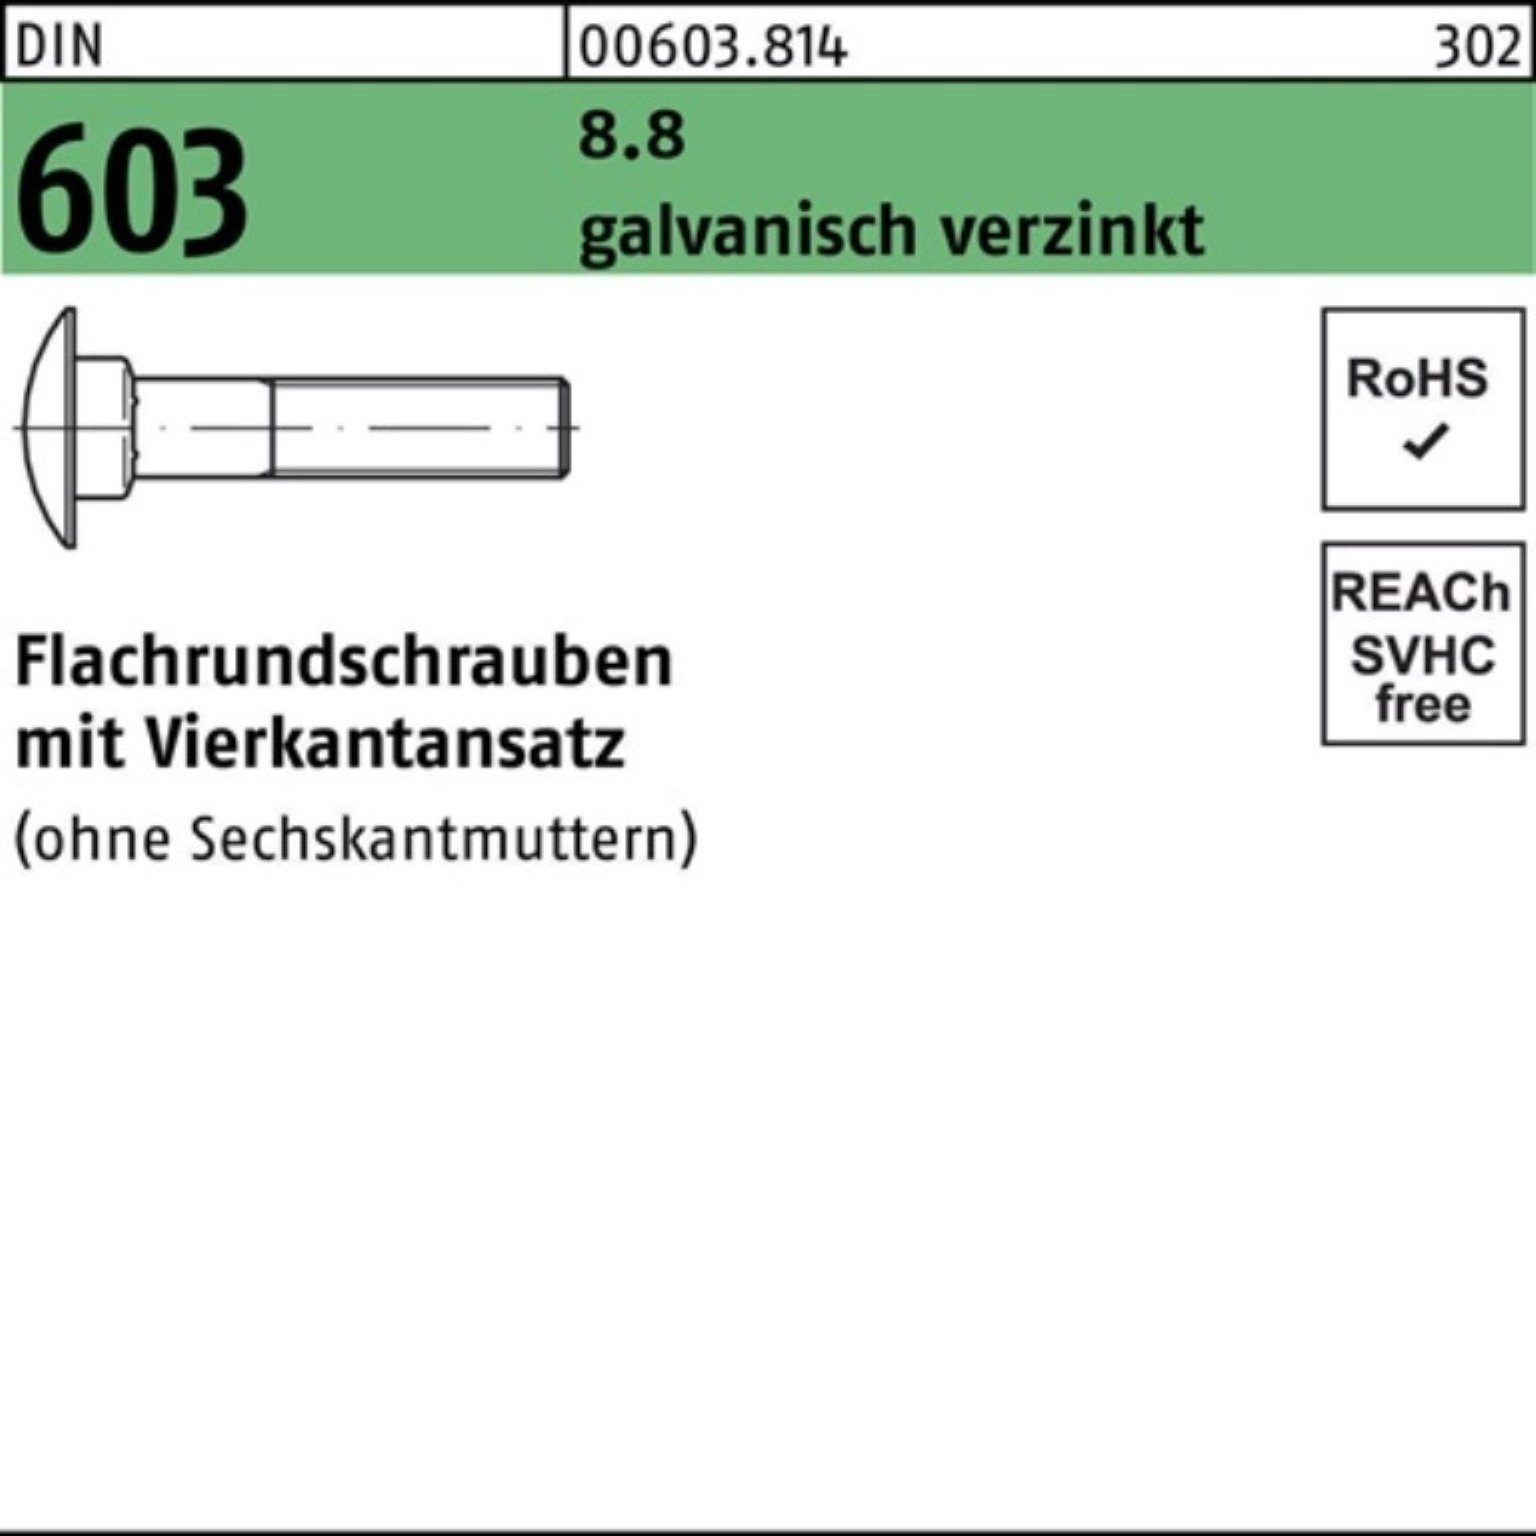 Vierkantansatz Reyher Flachrundschraube galv.ver 8.8 Schraube Pack M8x55 603 DIN 200er